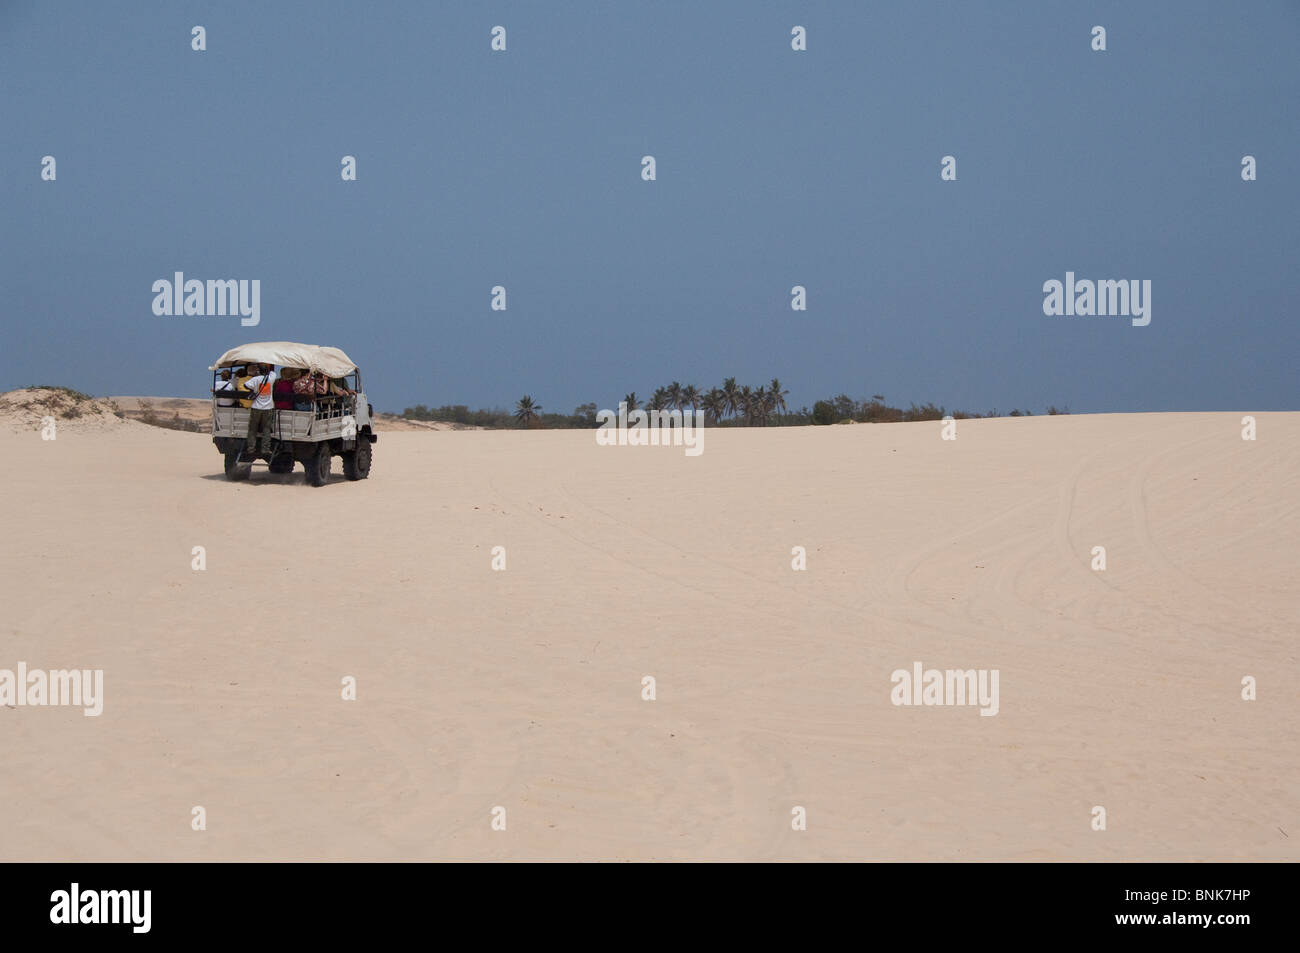 Afrique, Sénégal, Dakar. Explorer les dunes de sable autour du Lac Rose de Retba en 4x4, jeeps. Banque D'Images